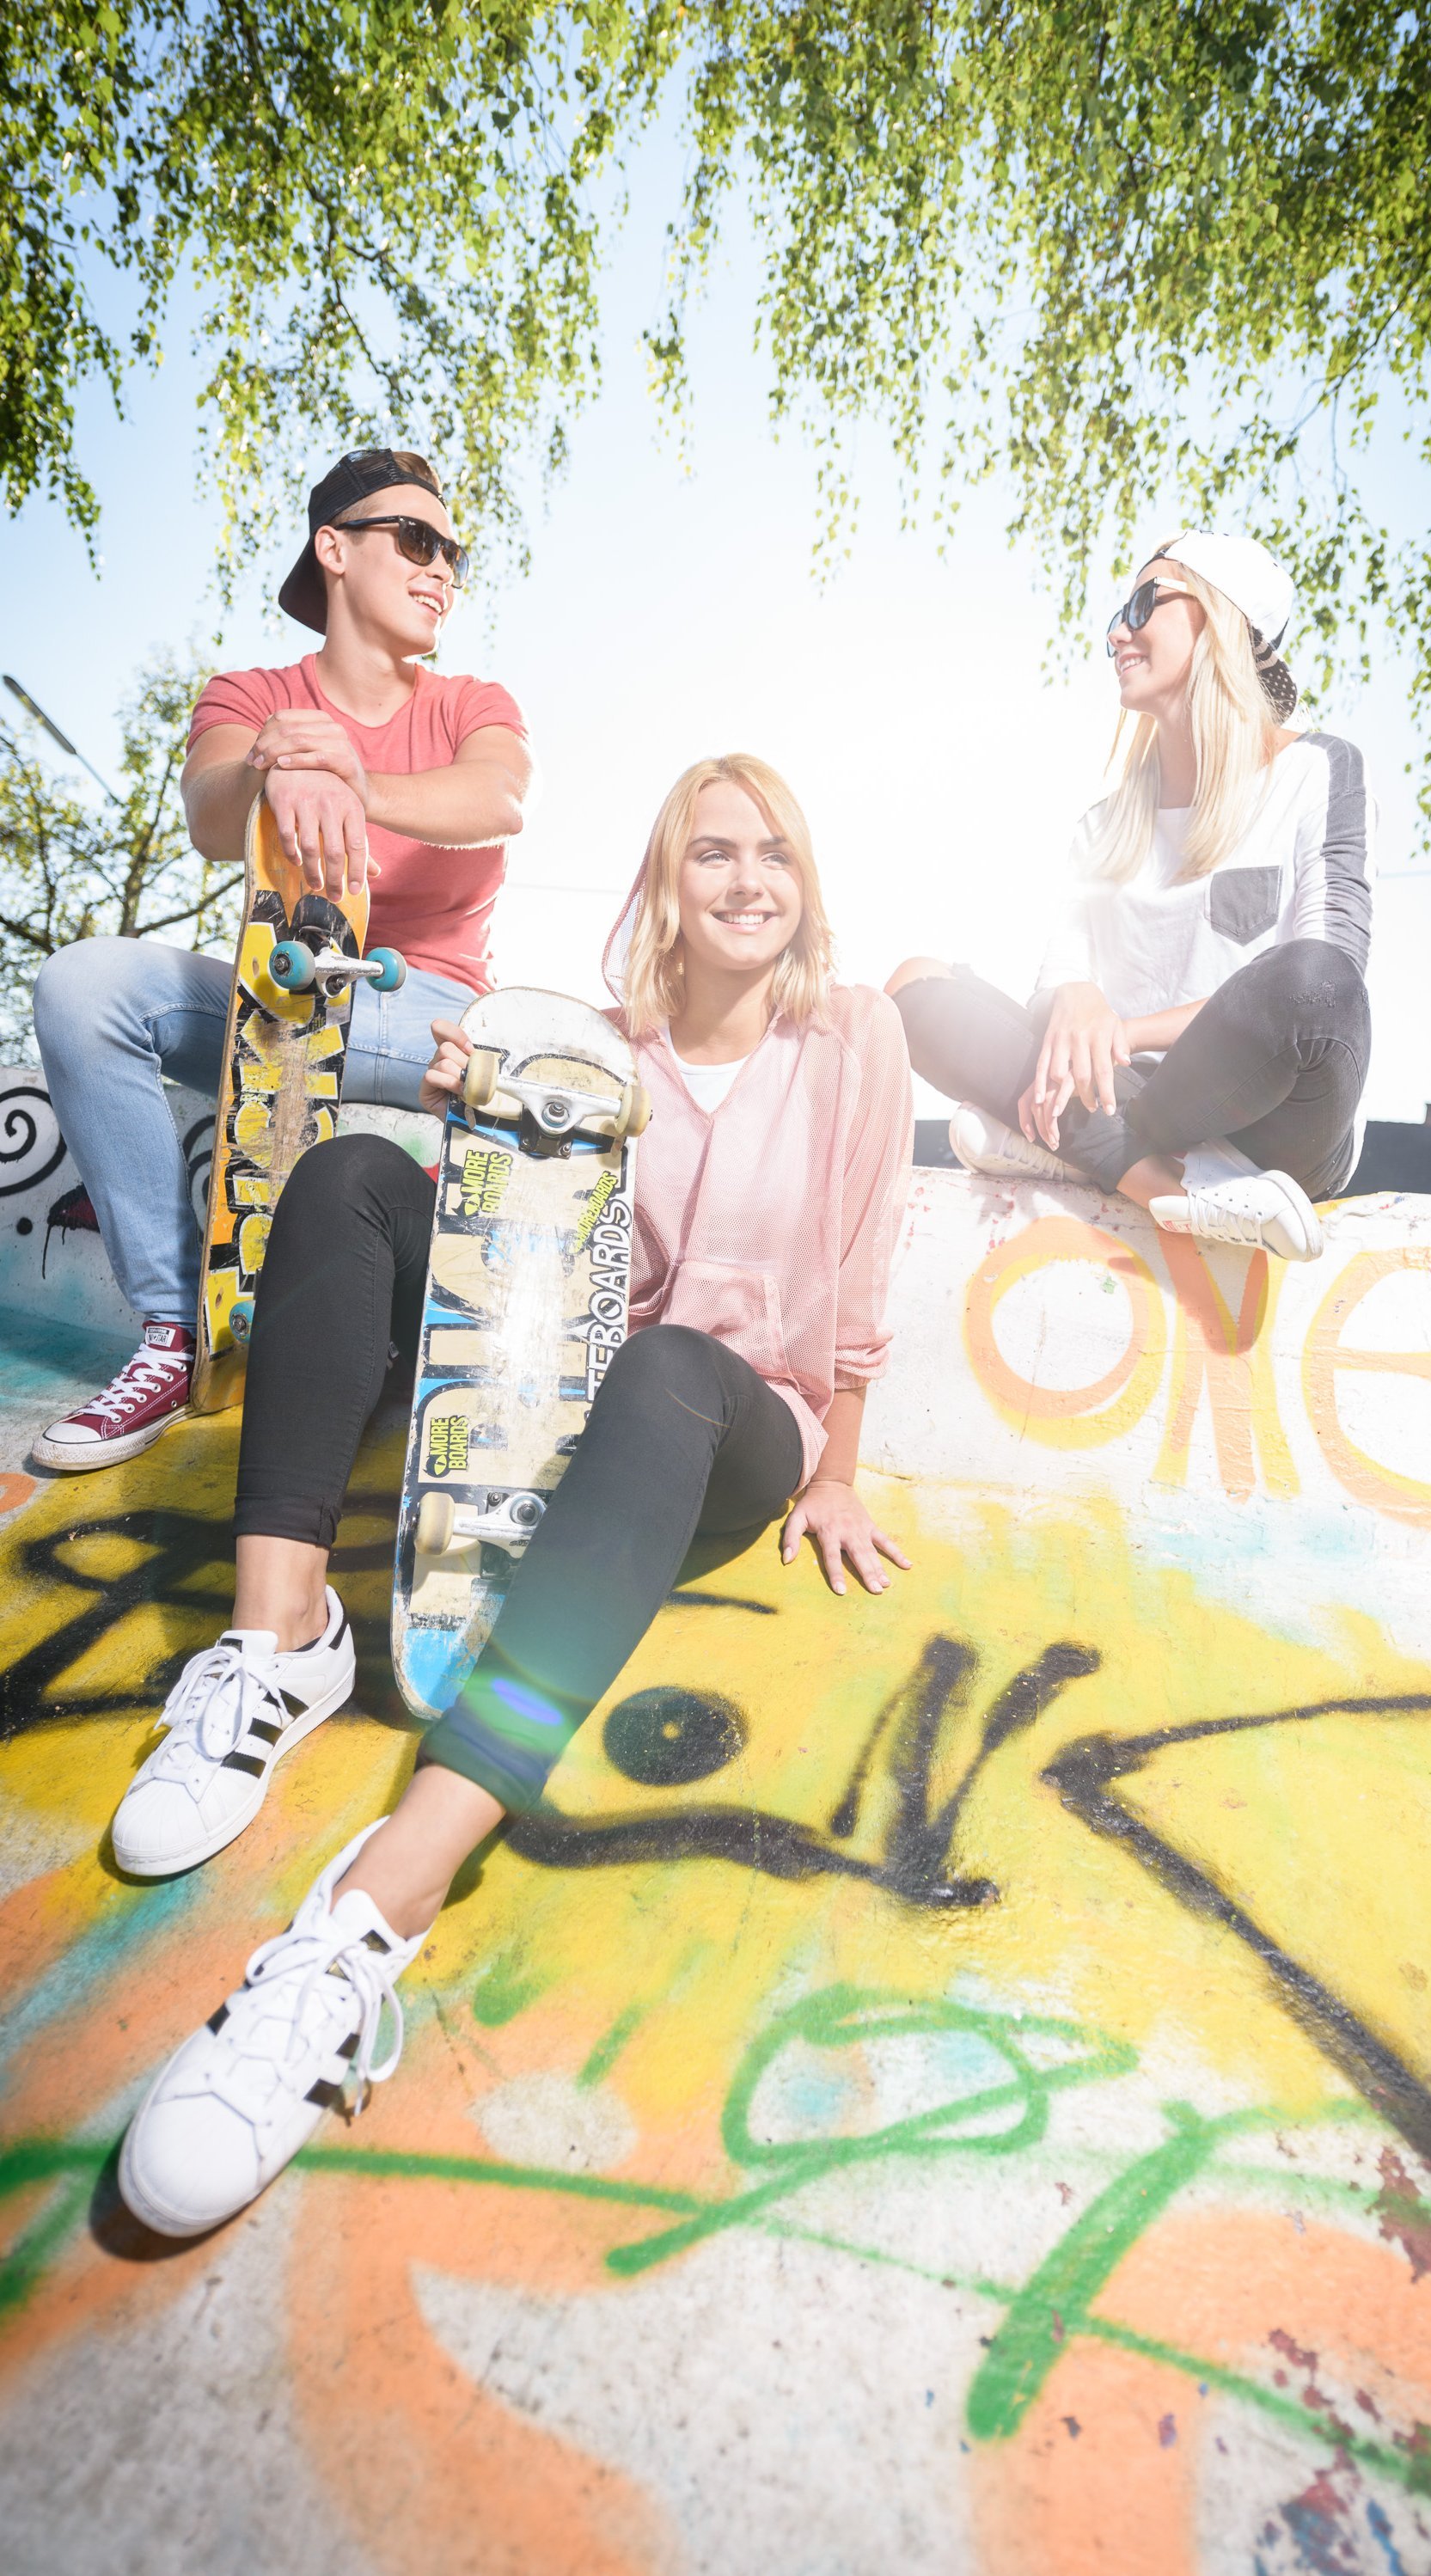 Jugendliche draußen mit Skateboard auf Skateboardrampe 